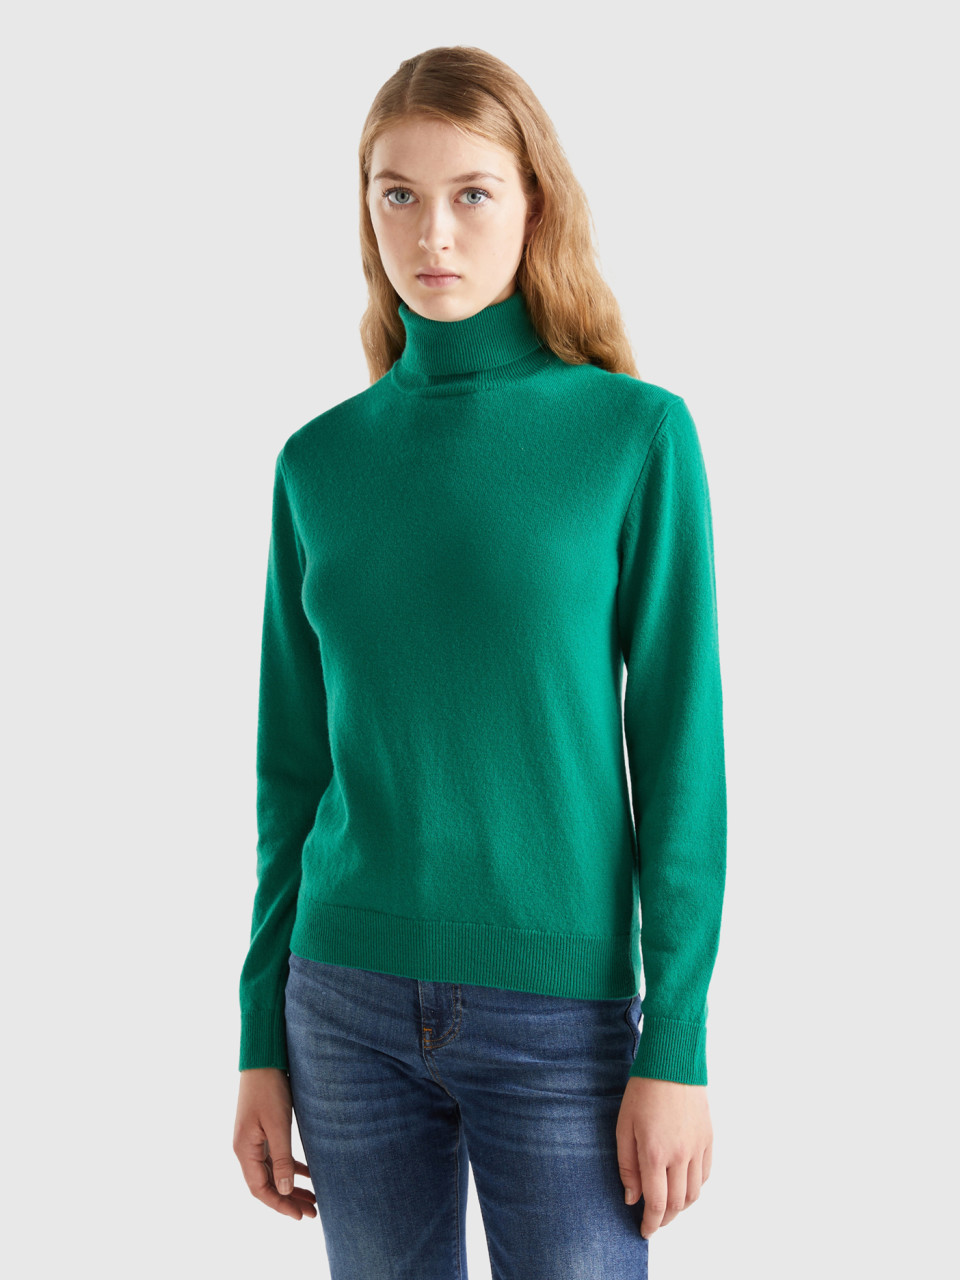 Benetton, Forest Green Turtleneck In Pure Merino Wool, Green, Women